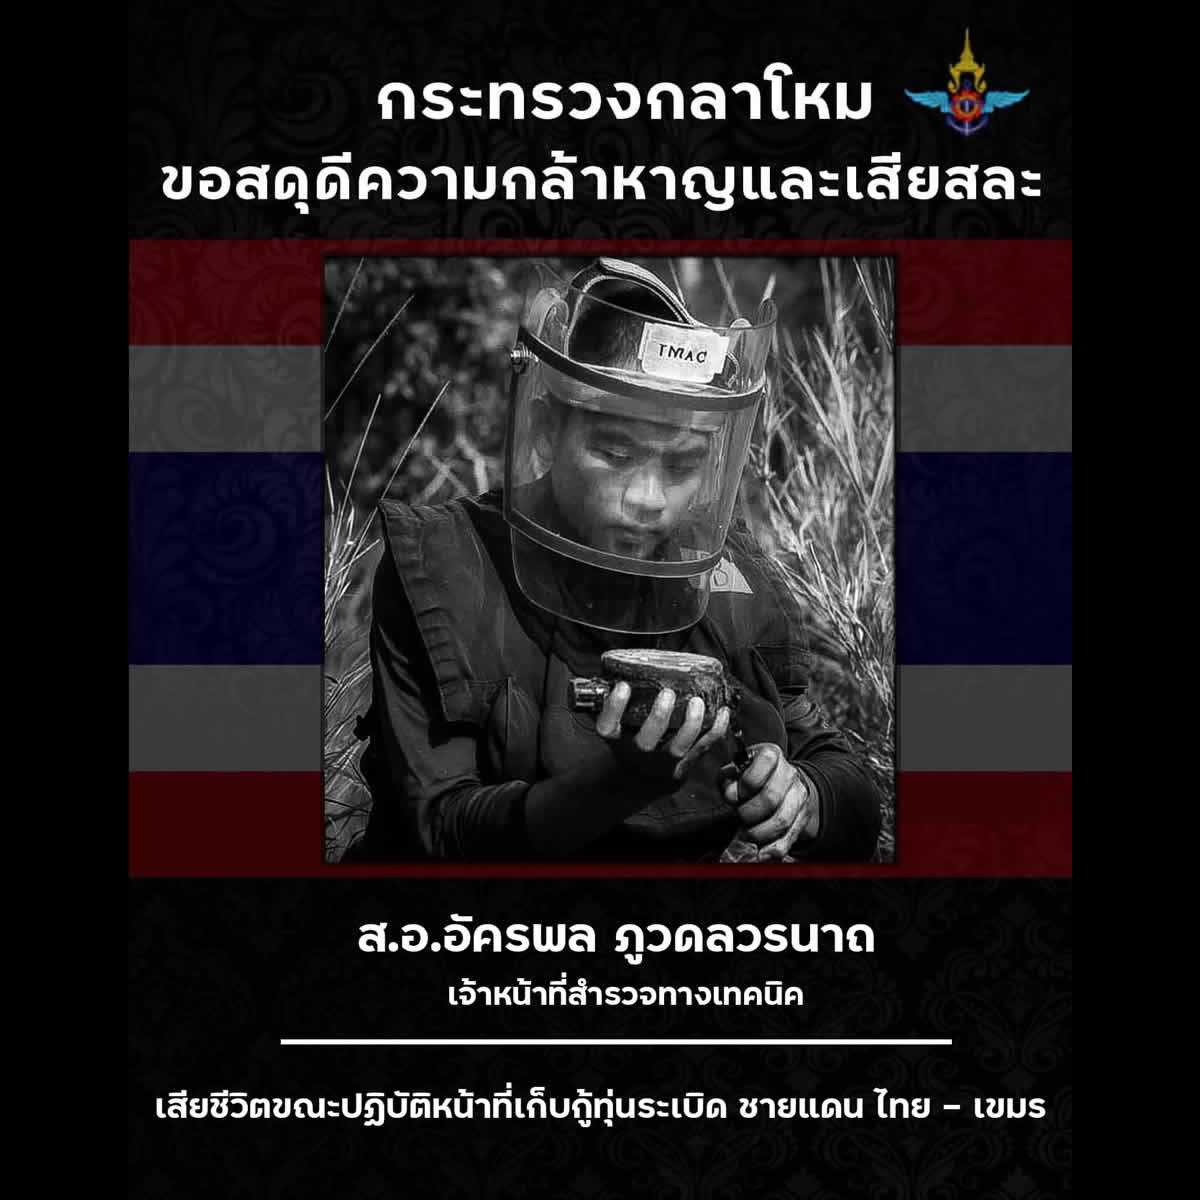 タイ兵士、タイ－カンボジア国境で地雷除去任務中に死亡